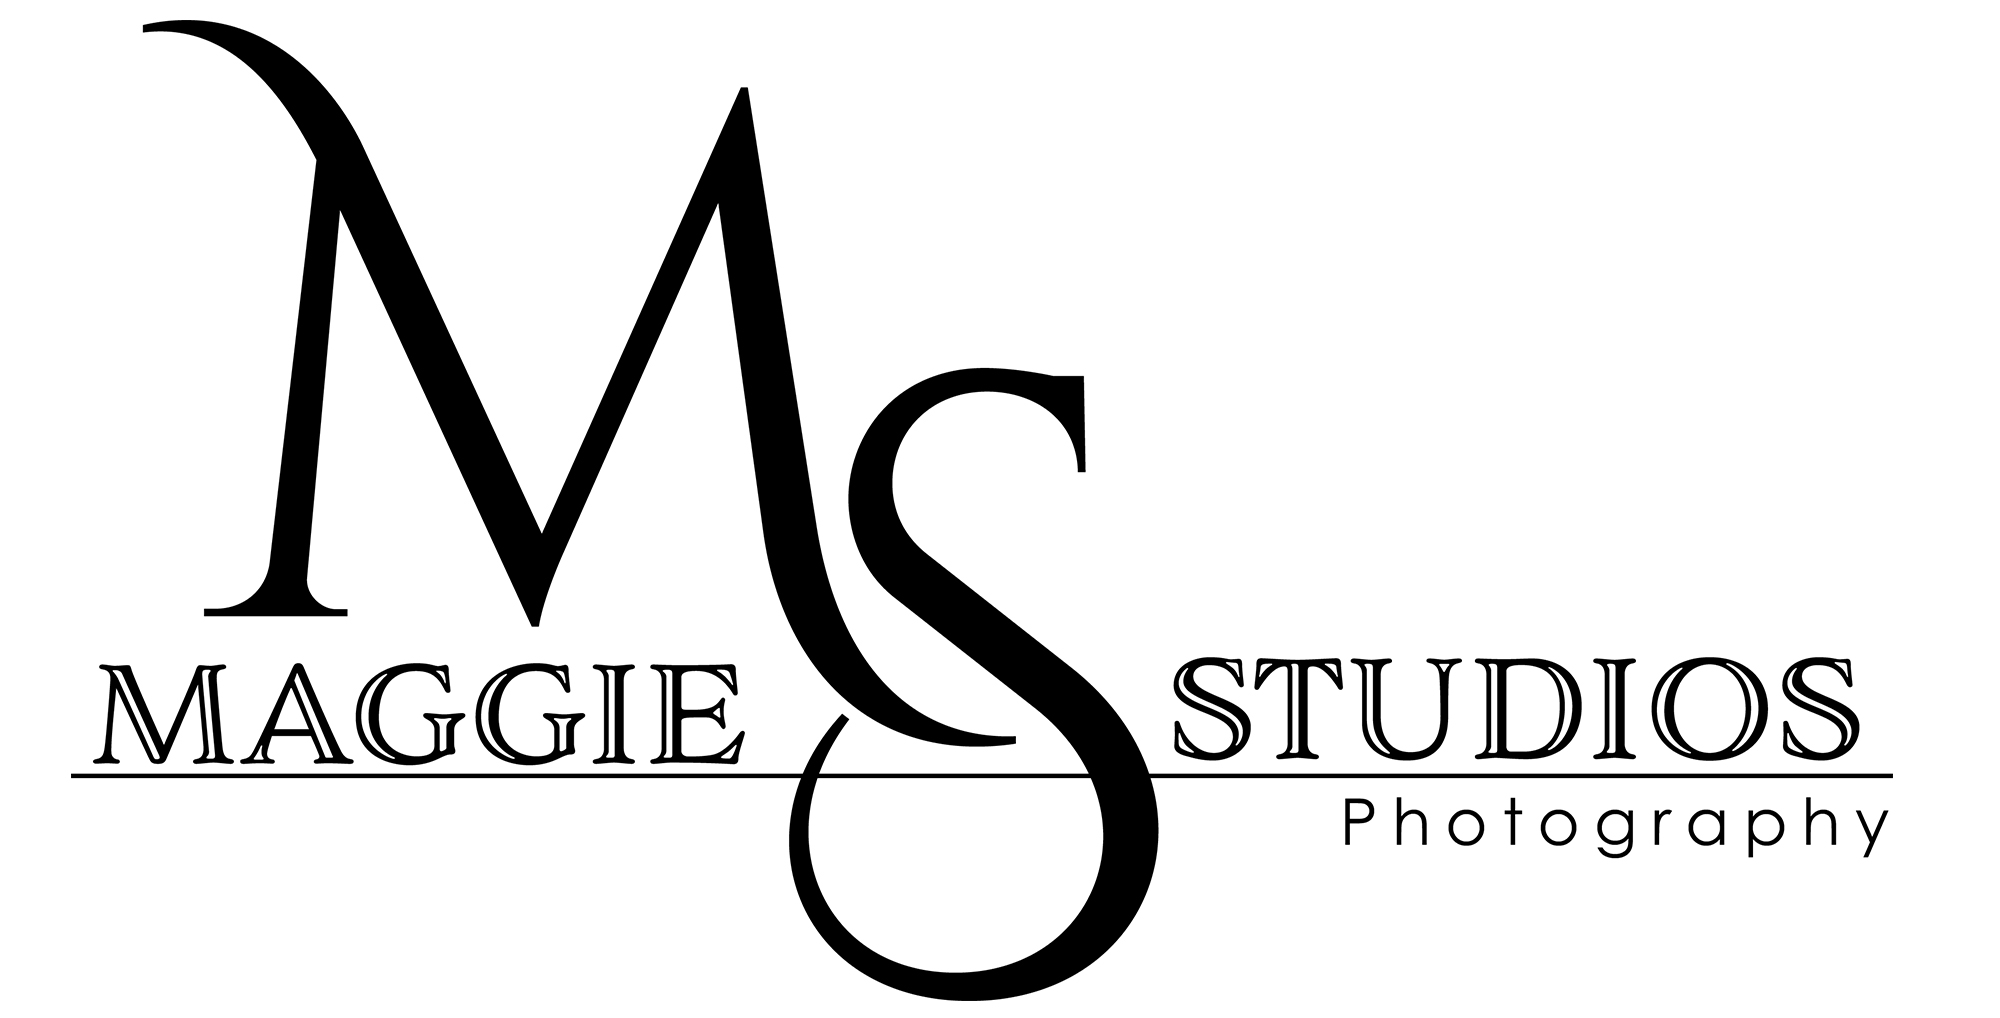 Maggie Studios Photography